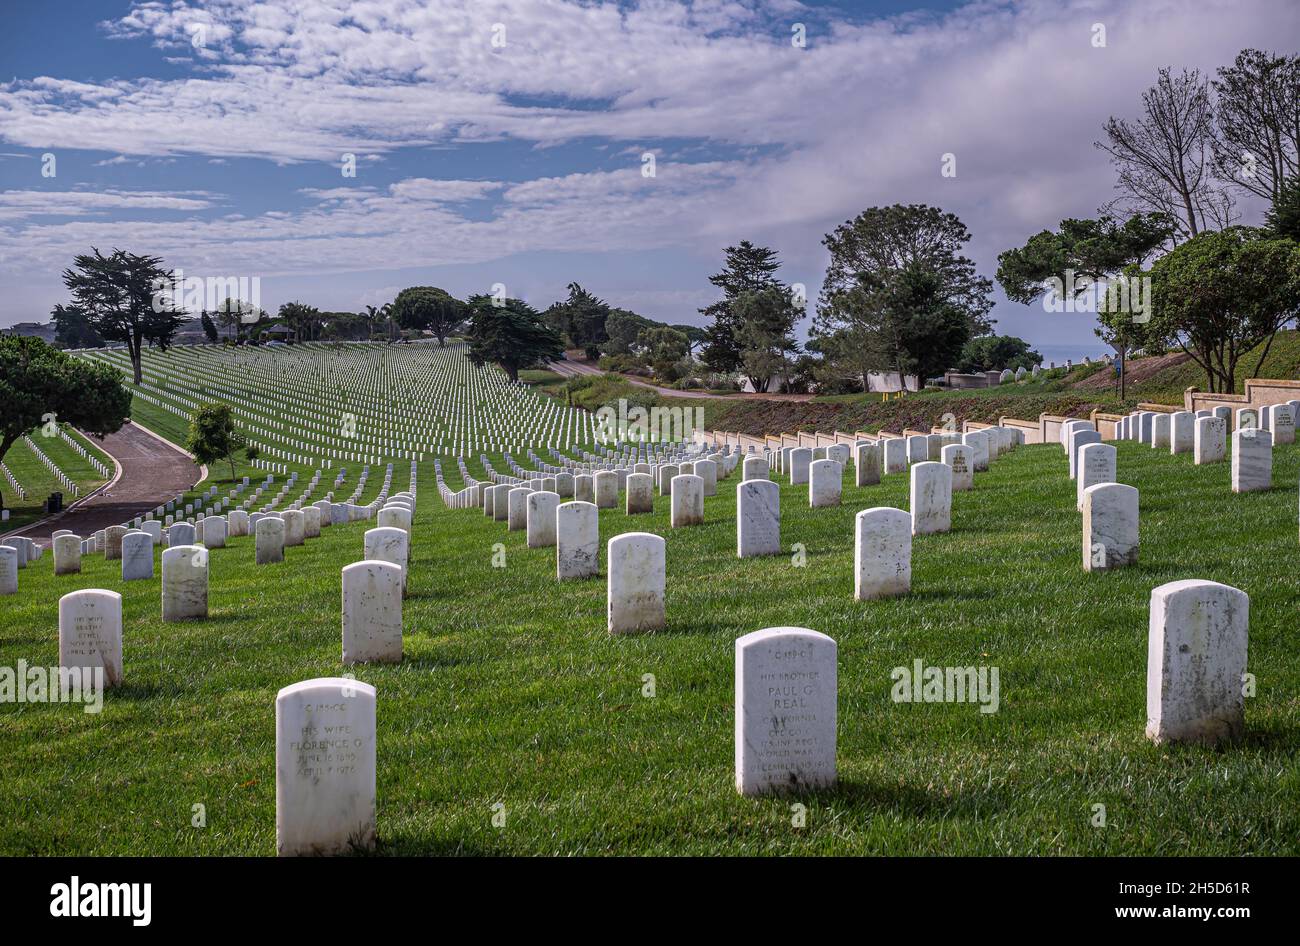 San Diego, Kalifornien, USA - 5. Oktober 2021: Fort Rosecrans National Cemetery. Schräge grüne Landschaft aus weißen Grabsteinreihen, die einen visuellen Effekt erzeugen Stockfoto